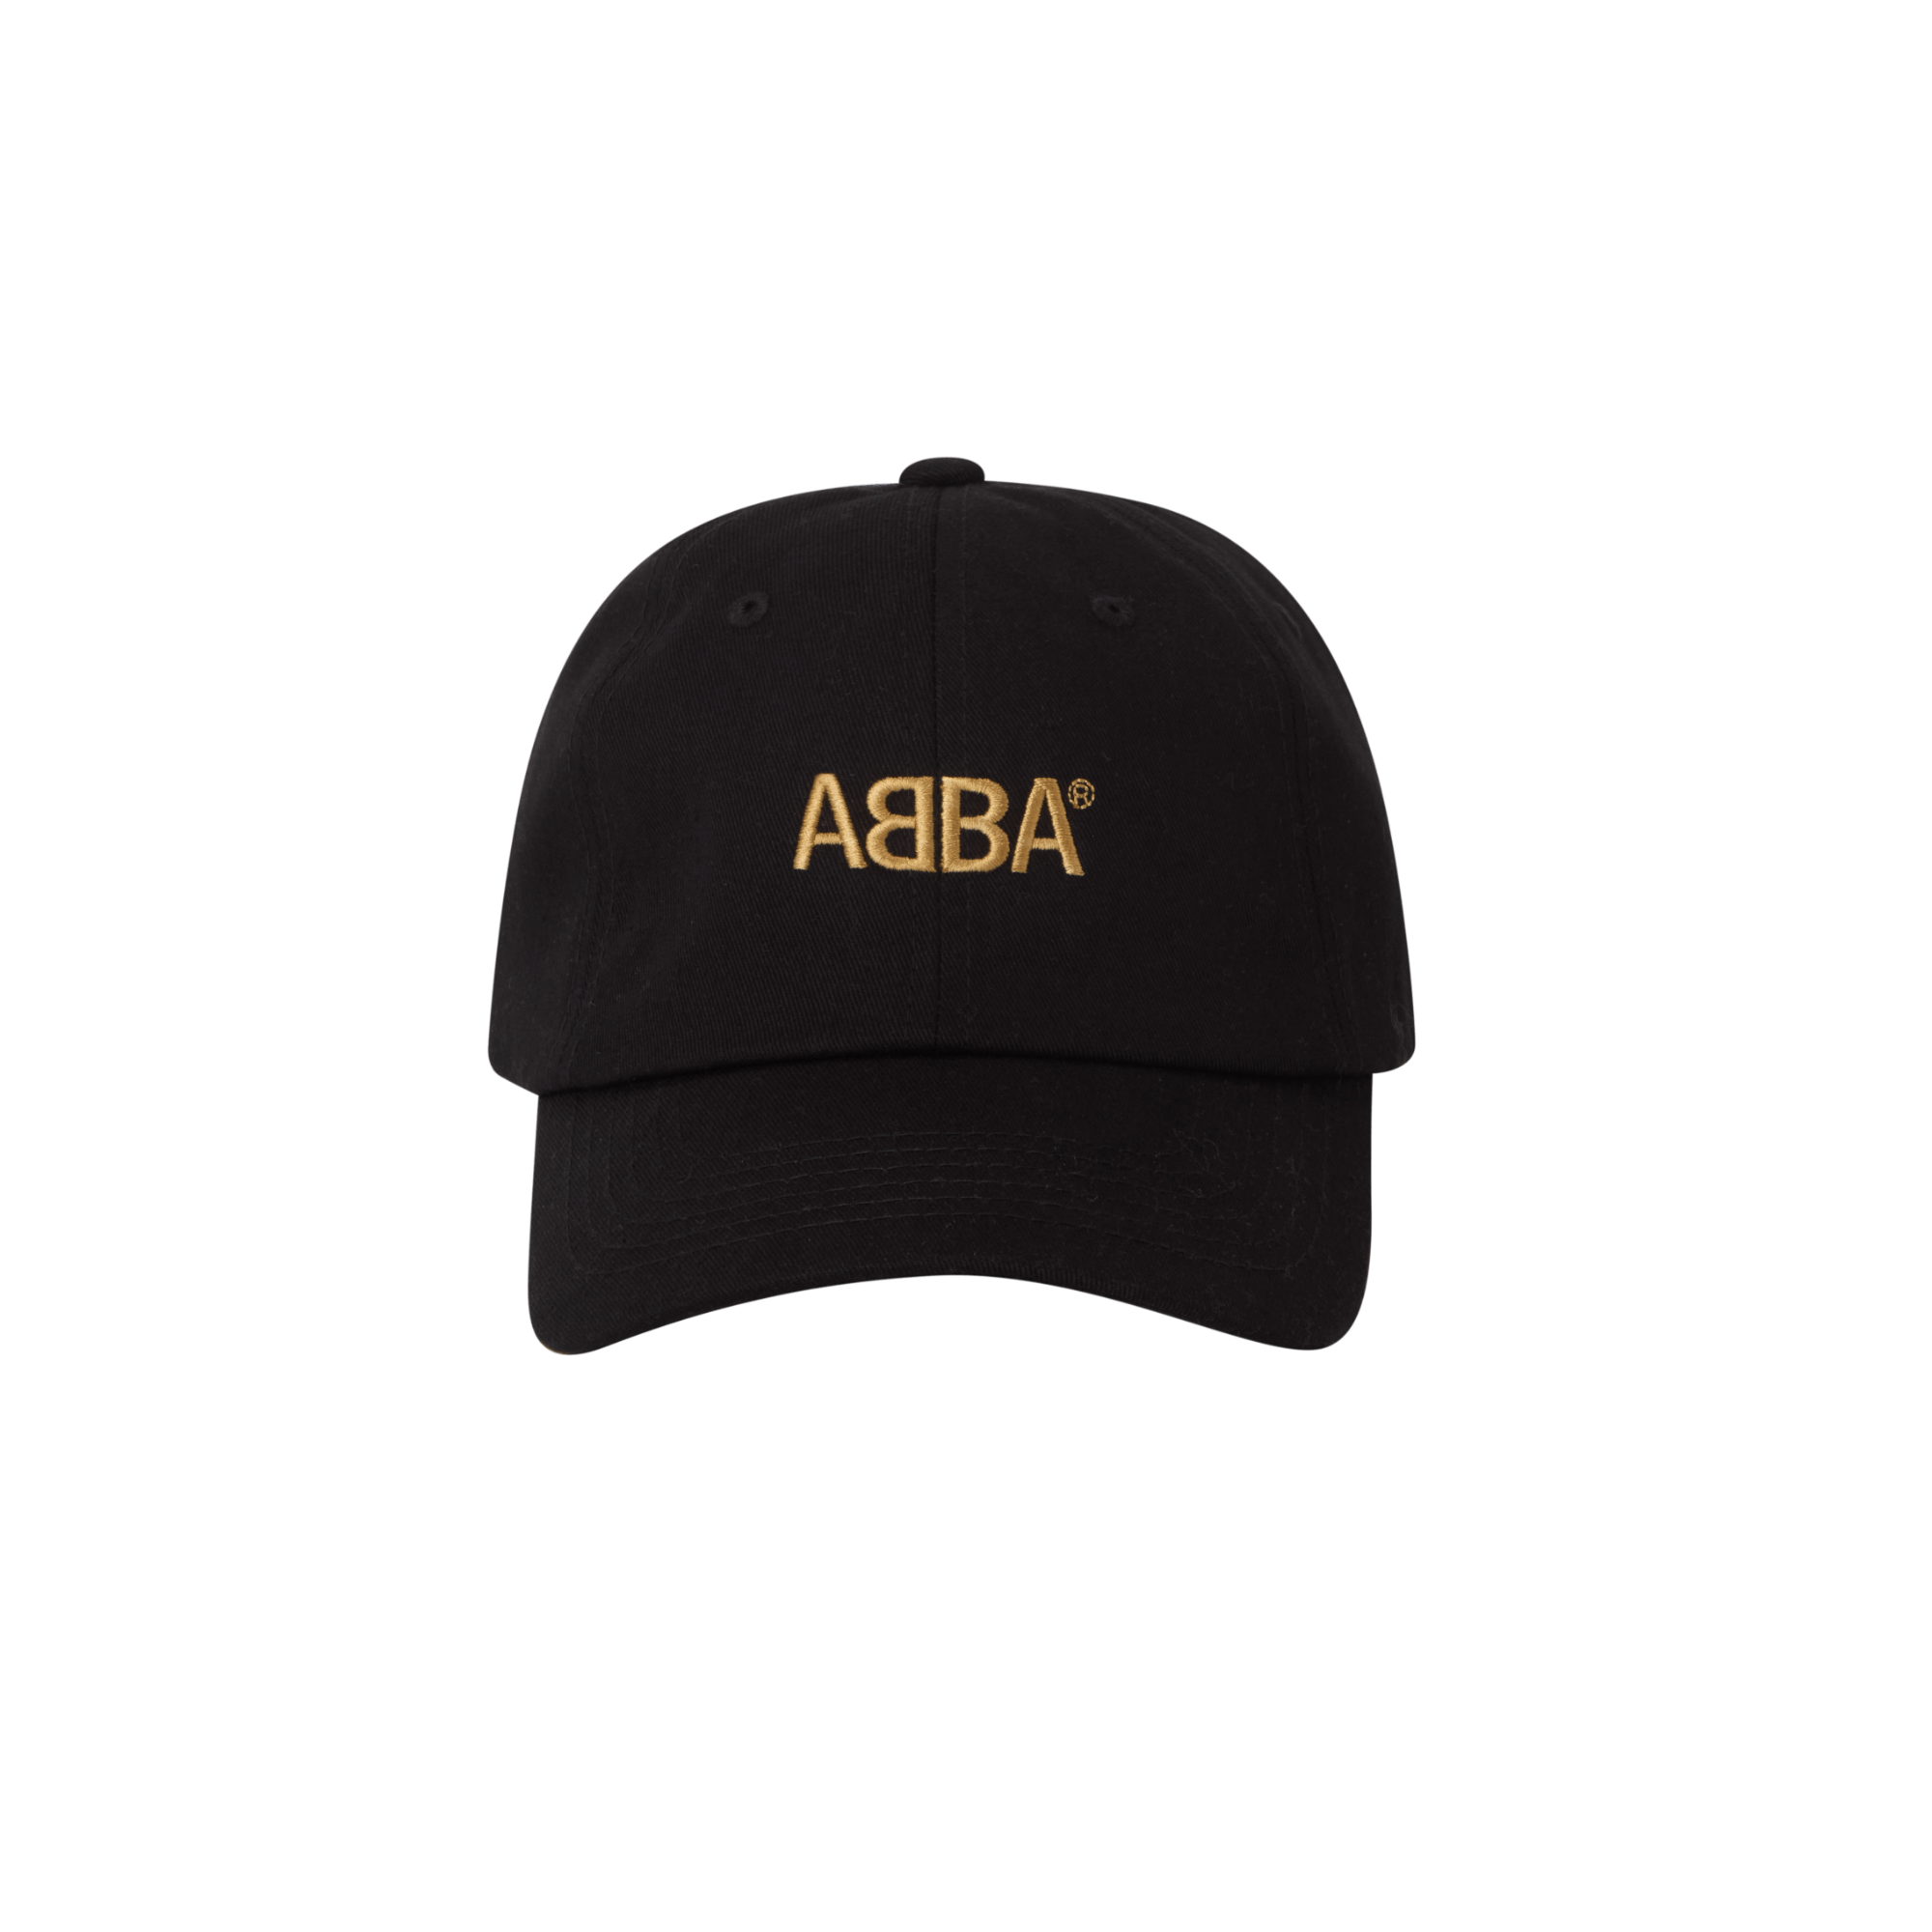 ABBA Gold svart dad cap